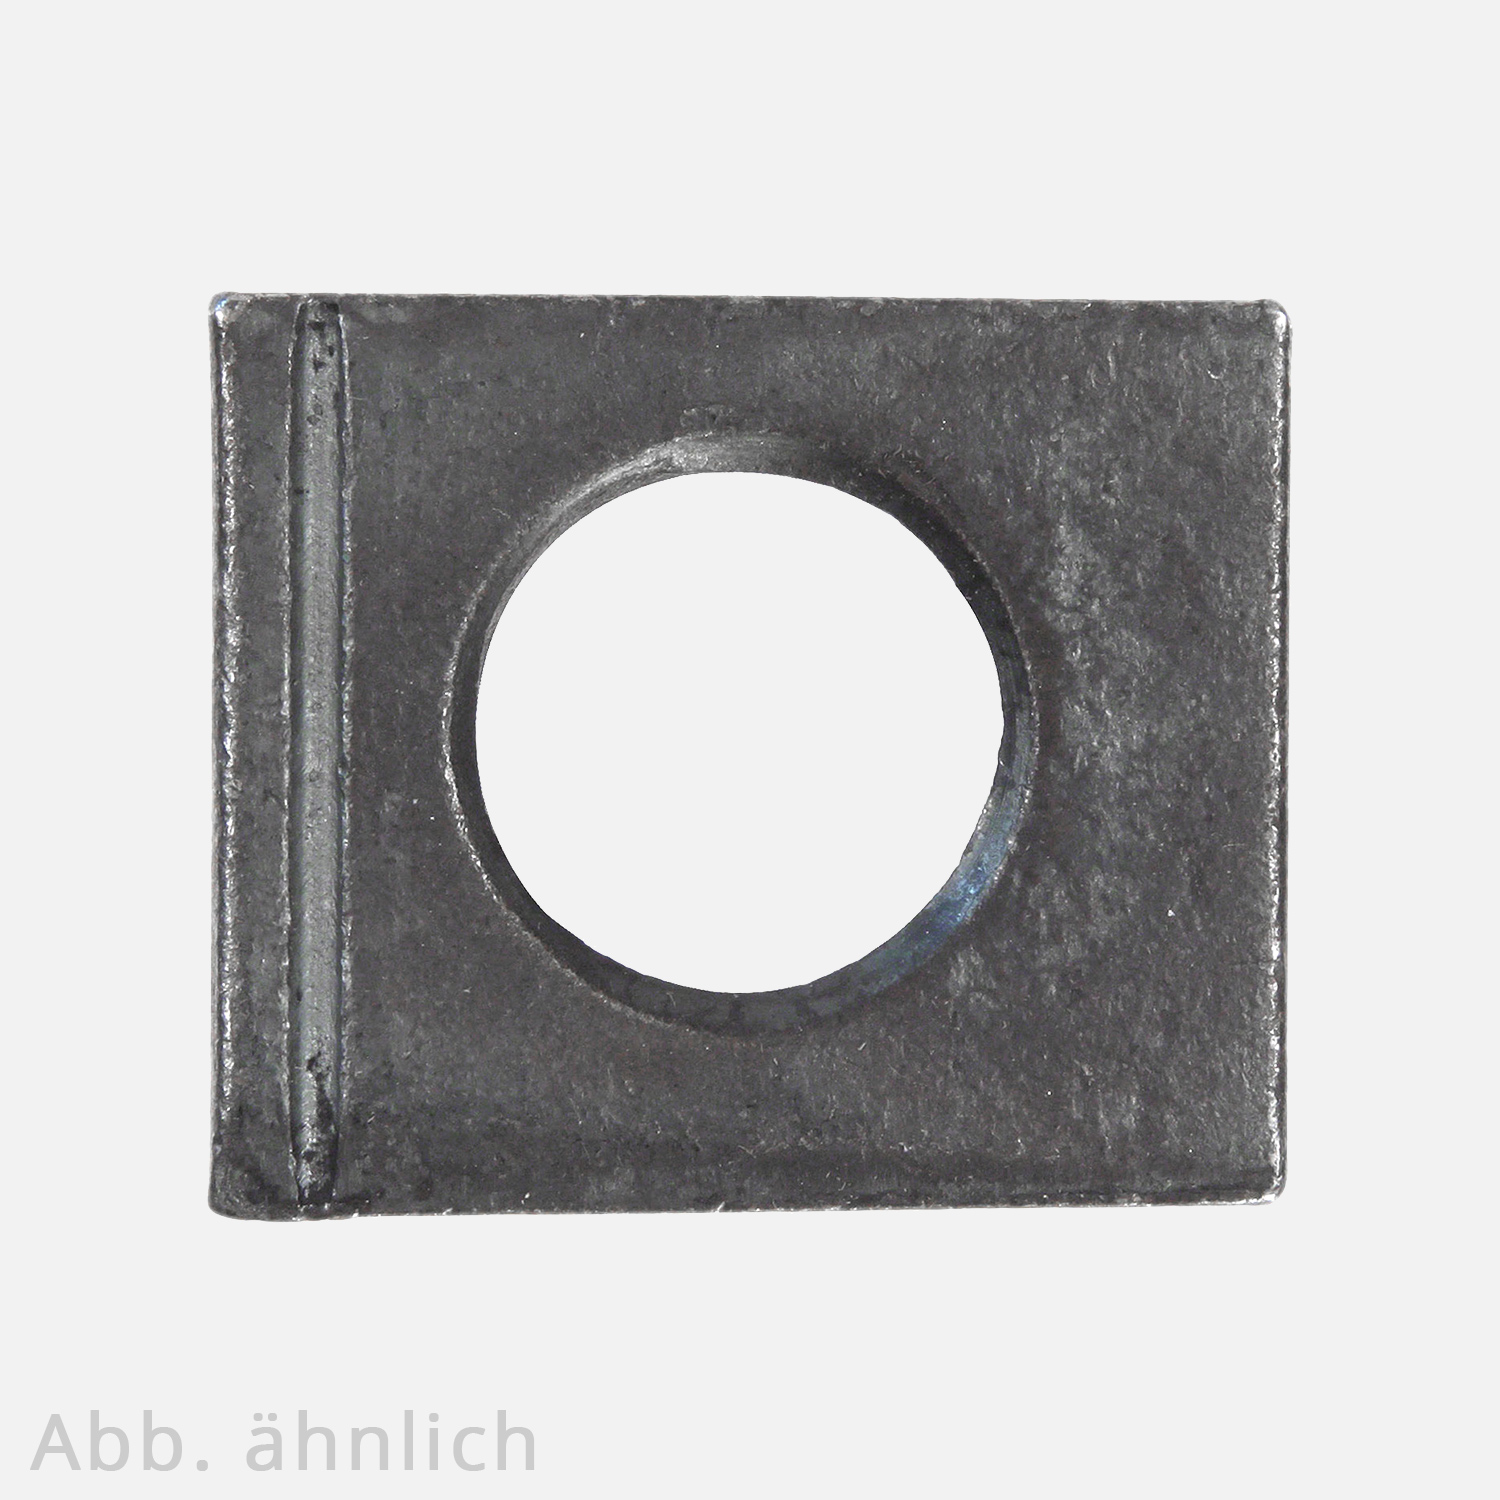 1 Vierkantscheibe - keilförmig 14% - 21 mm - DIN 6917 - Stahl vergütet